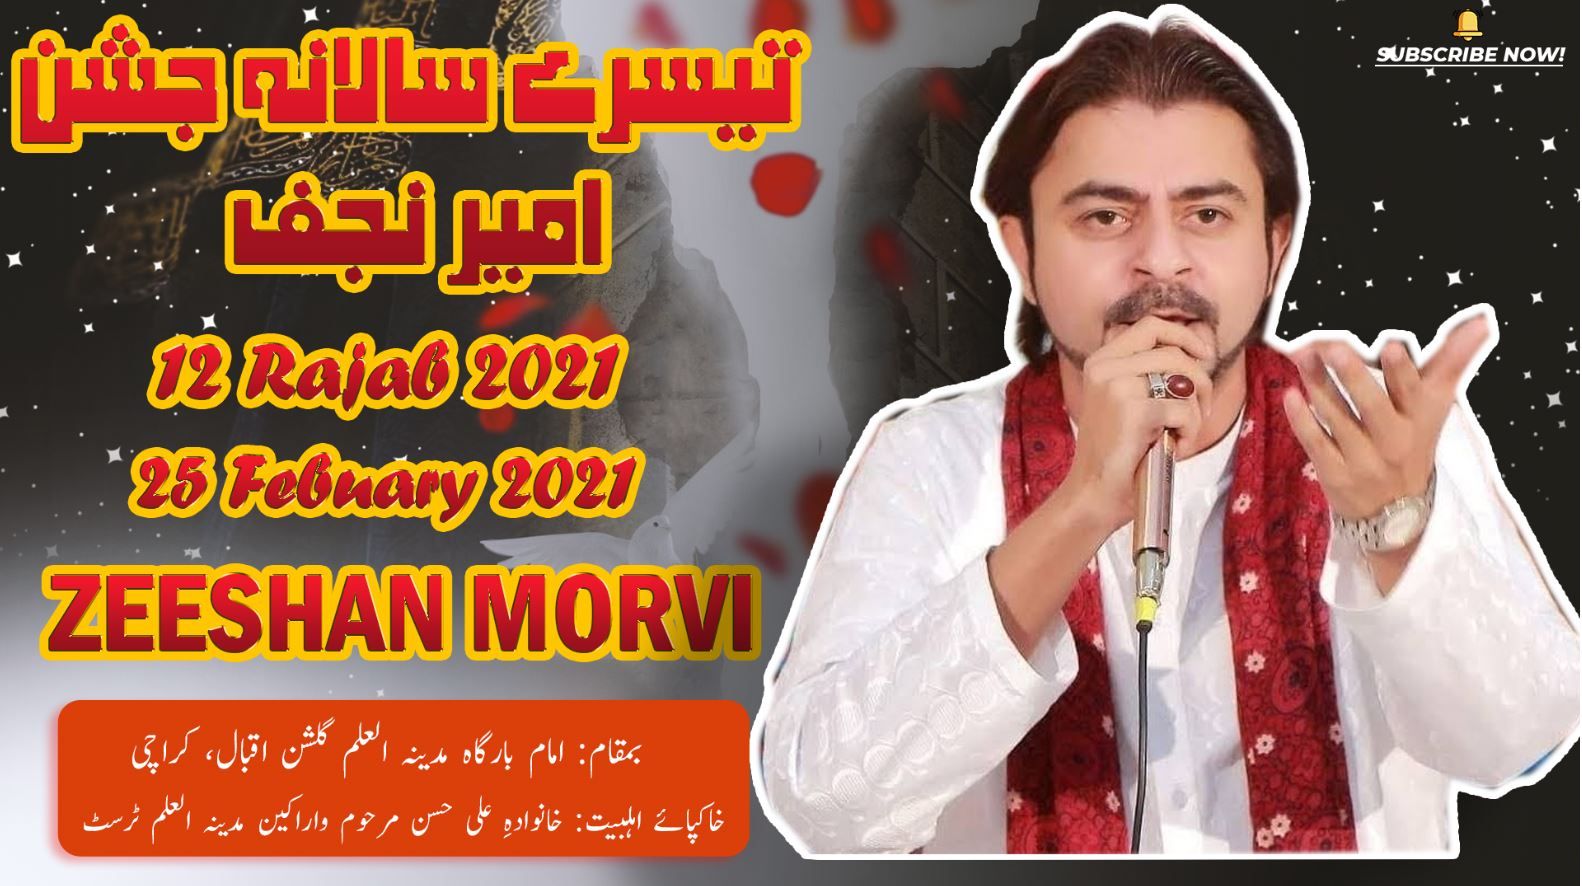 Manqabat | Zeeshan Morvi | Jashan Ameer-e-Najaf - 12 Rajab 2021 - Imam Bargah Madina Tul Ilm Karachi